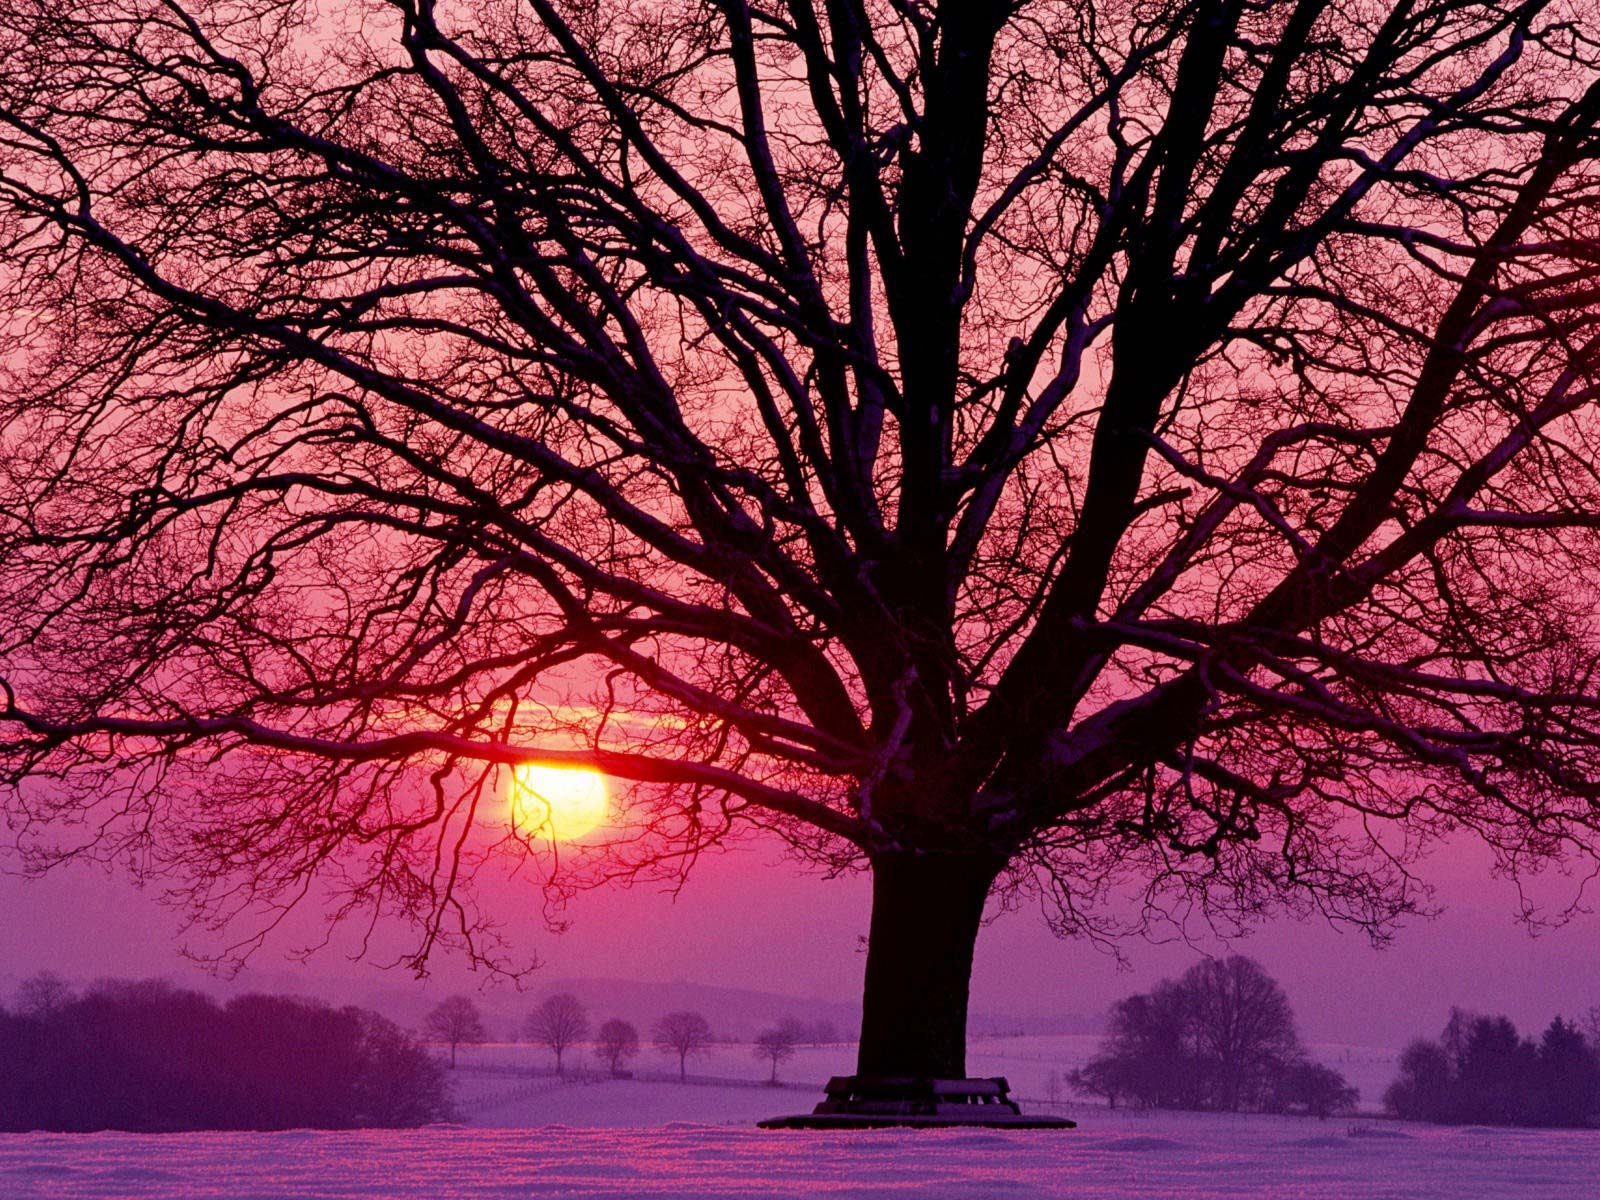 Розовый закат зимой